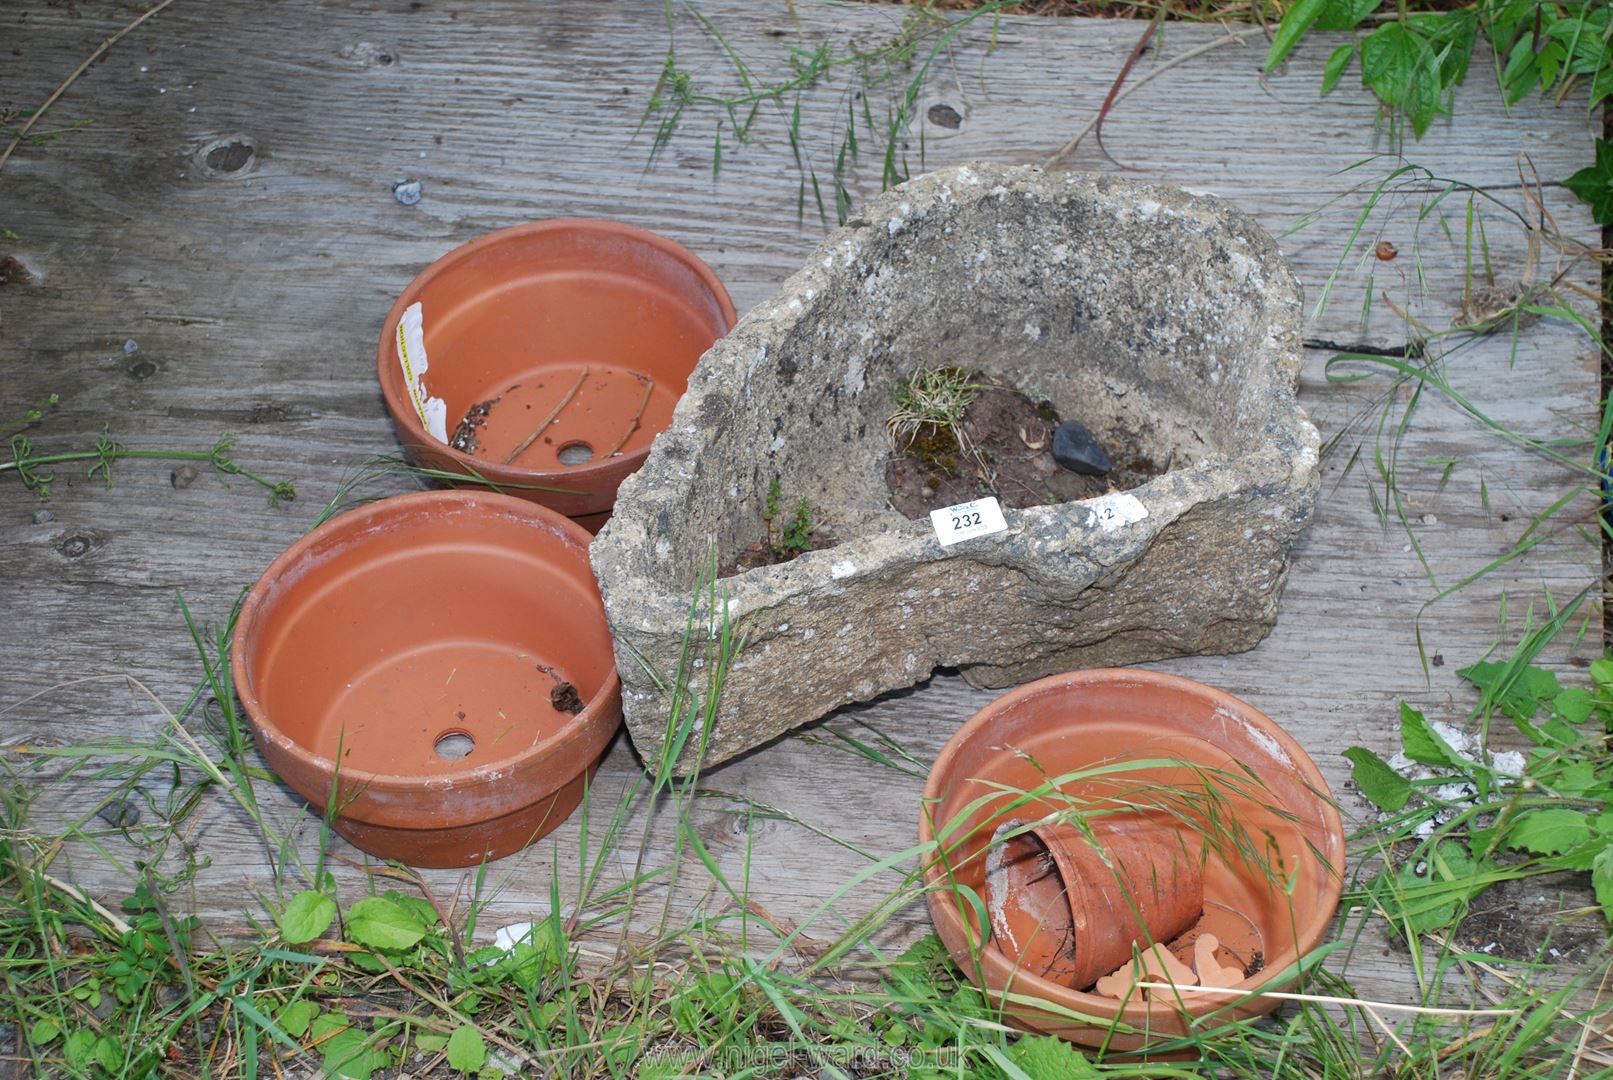 A rustic concrete planter with terracotta pots.